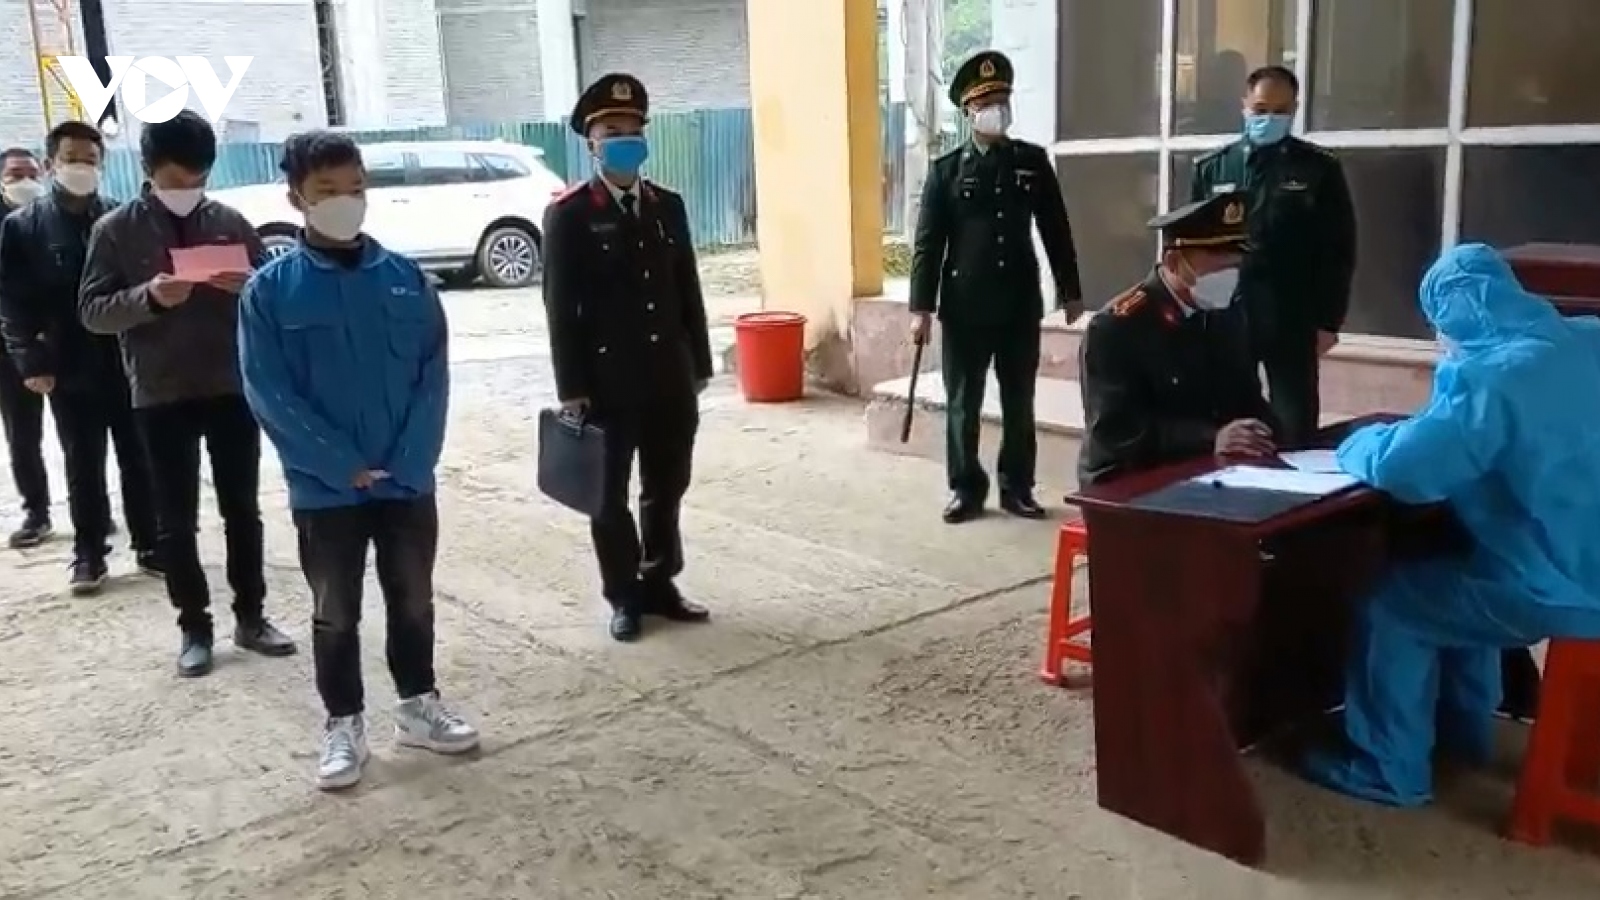 Cao Bằng trao trả nhóm công dân Trung Quốc nhập cảnh trái phép